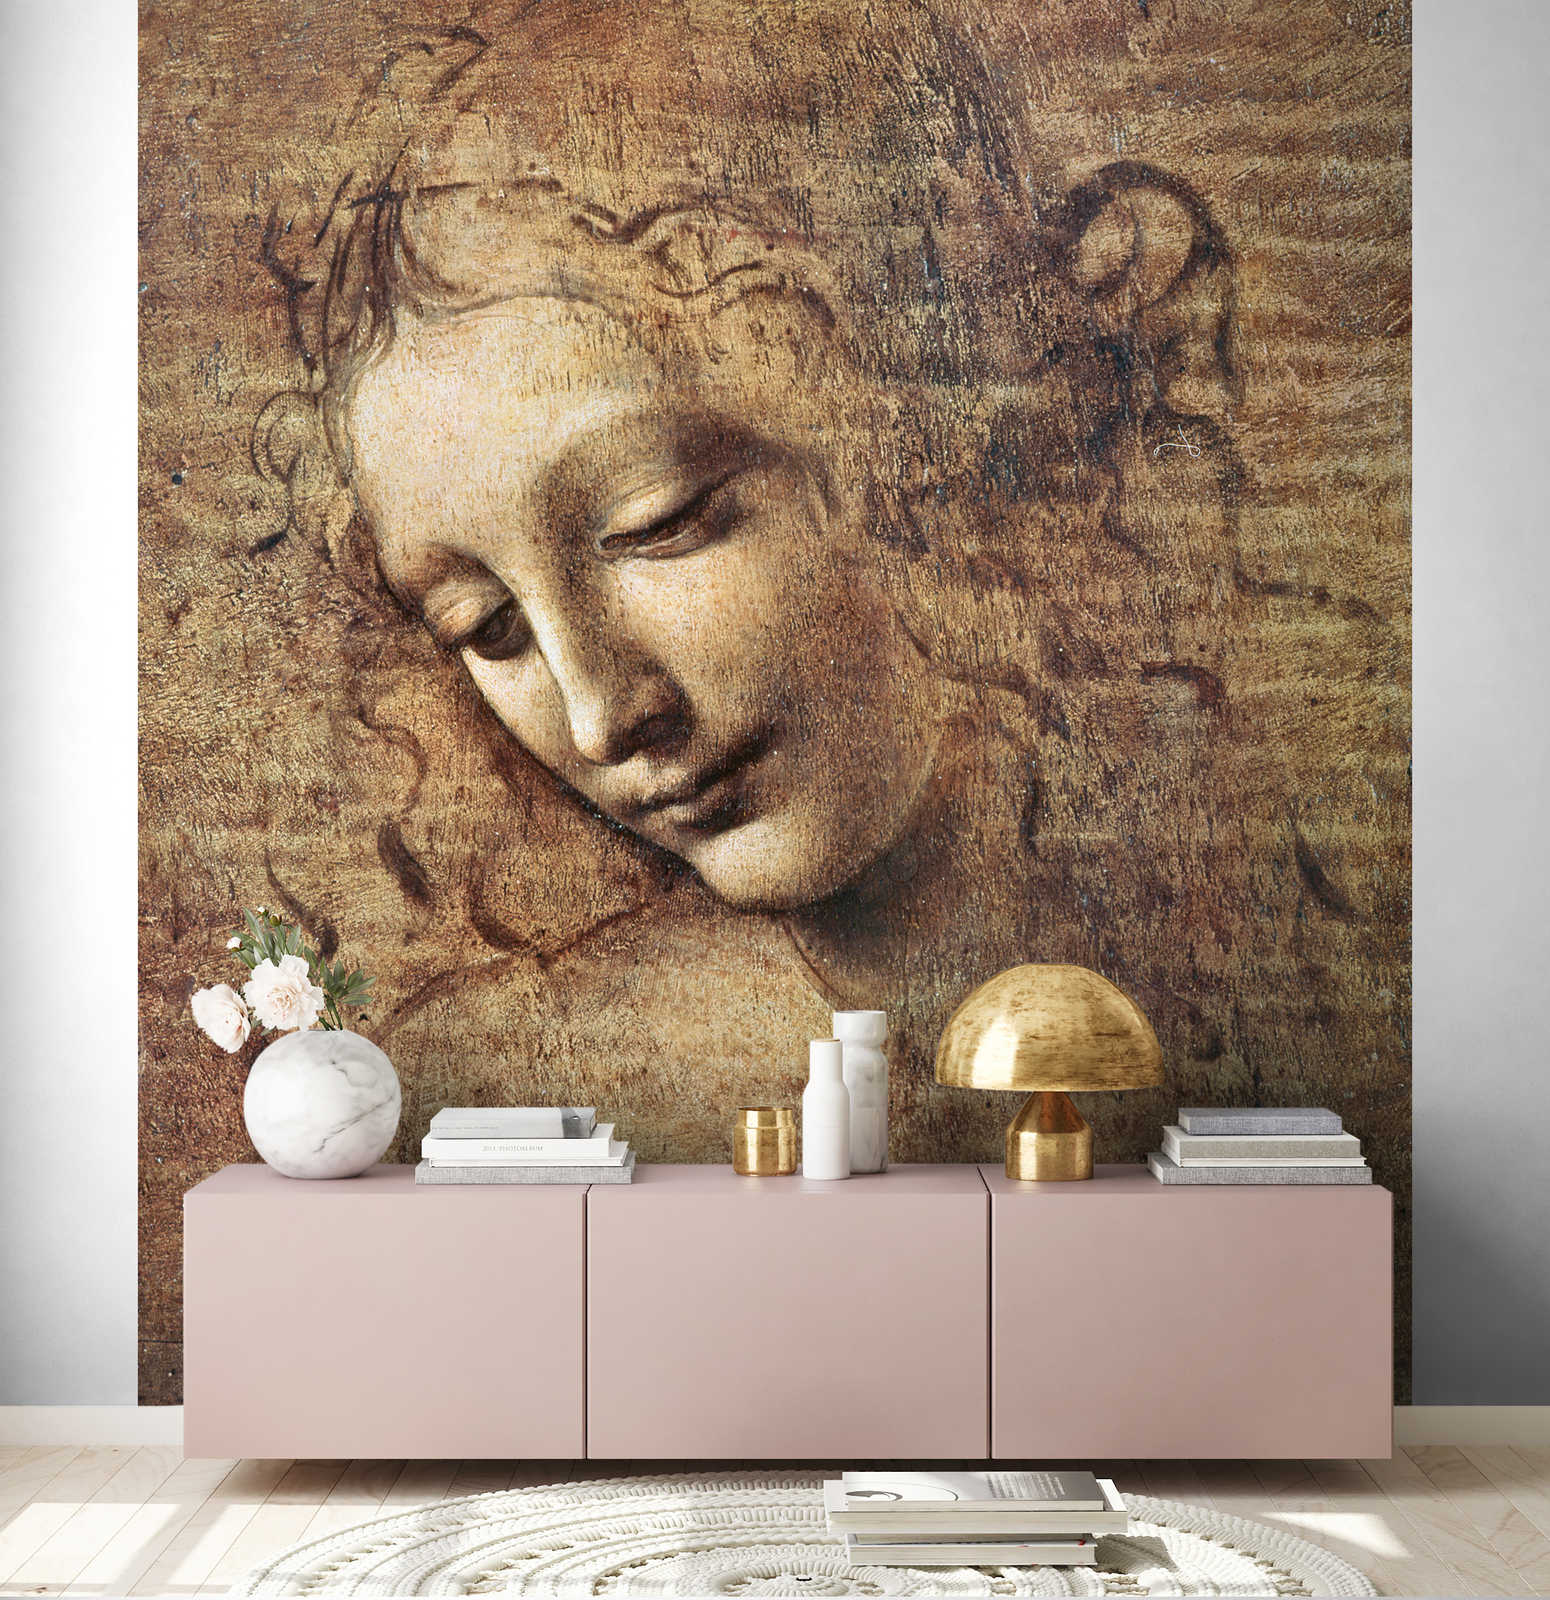             Fototapete "Kopf einer jungen Frau mit zerzaustem Haar " von Leonardo da Vinci
        